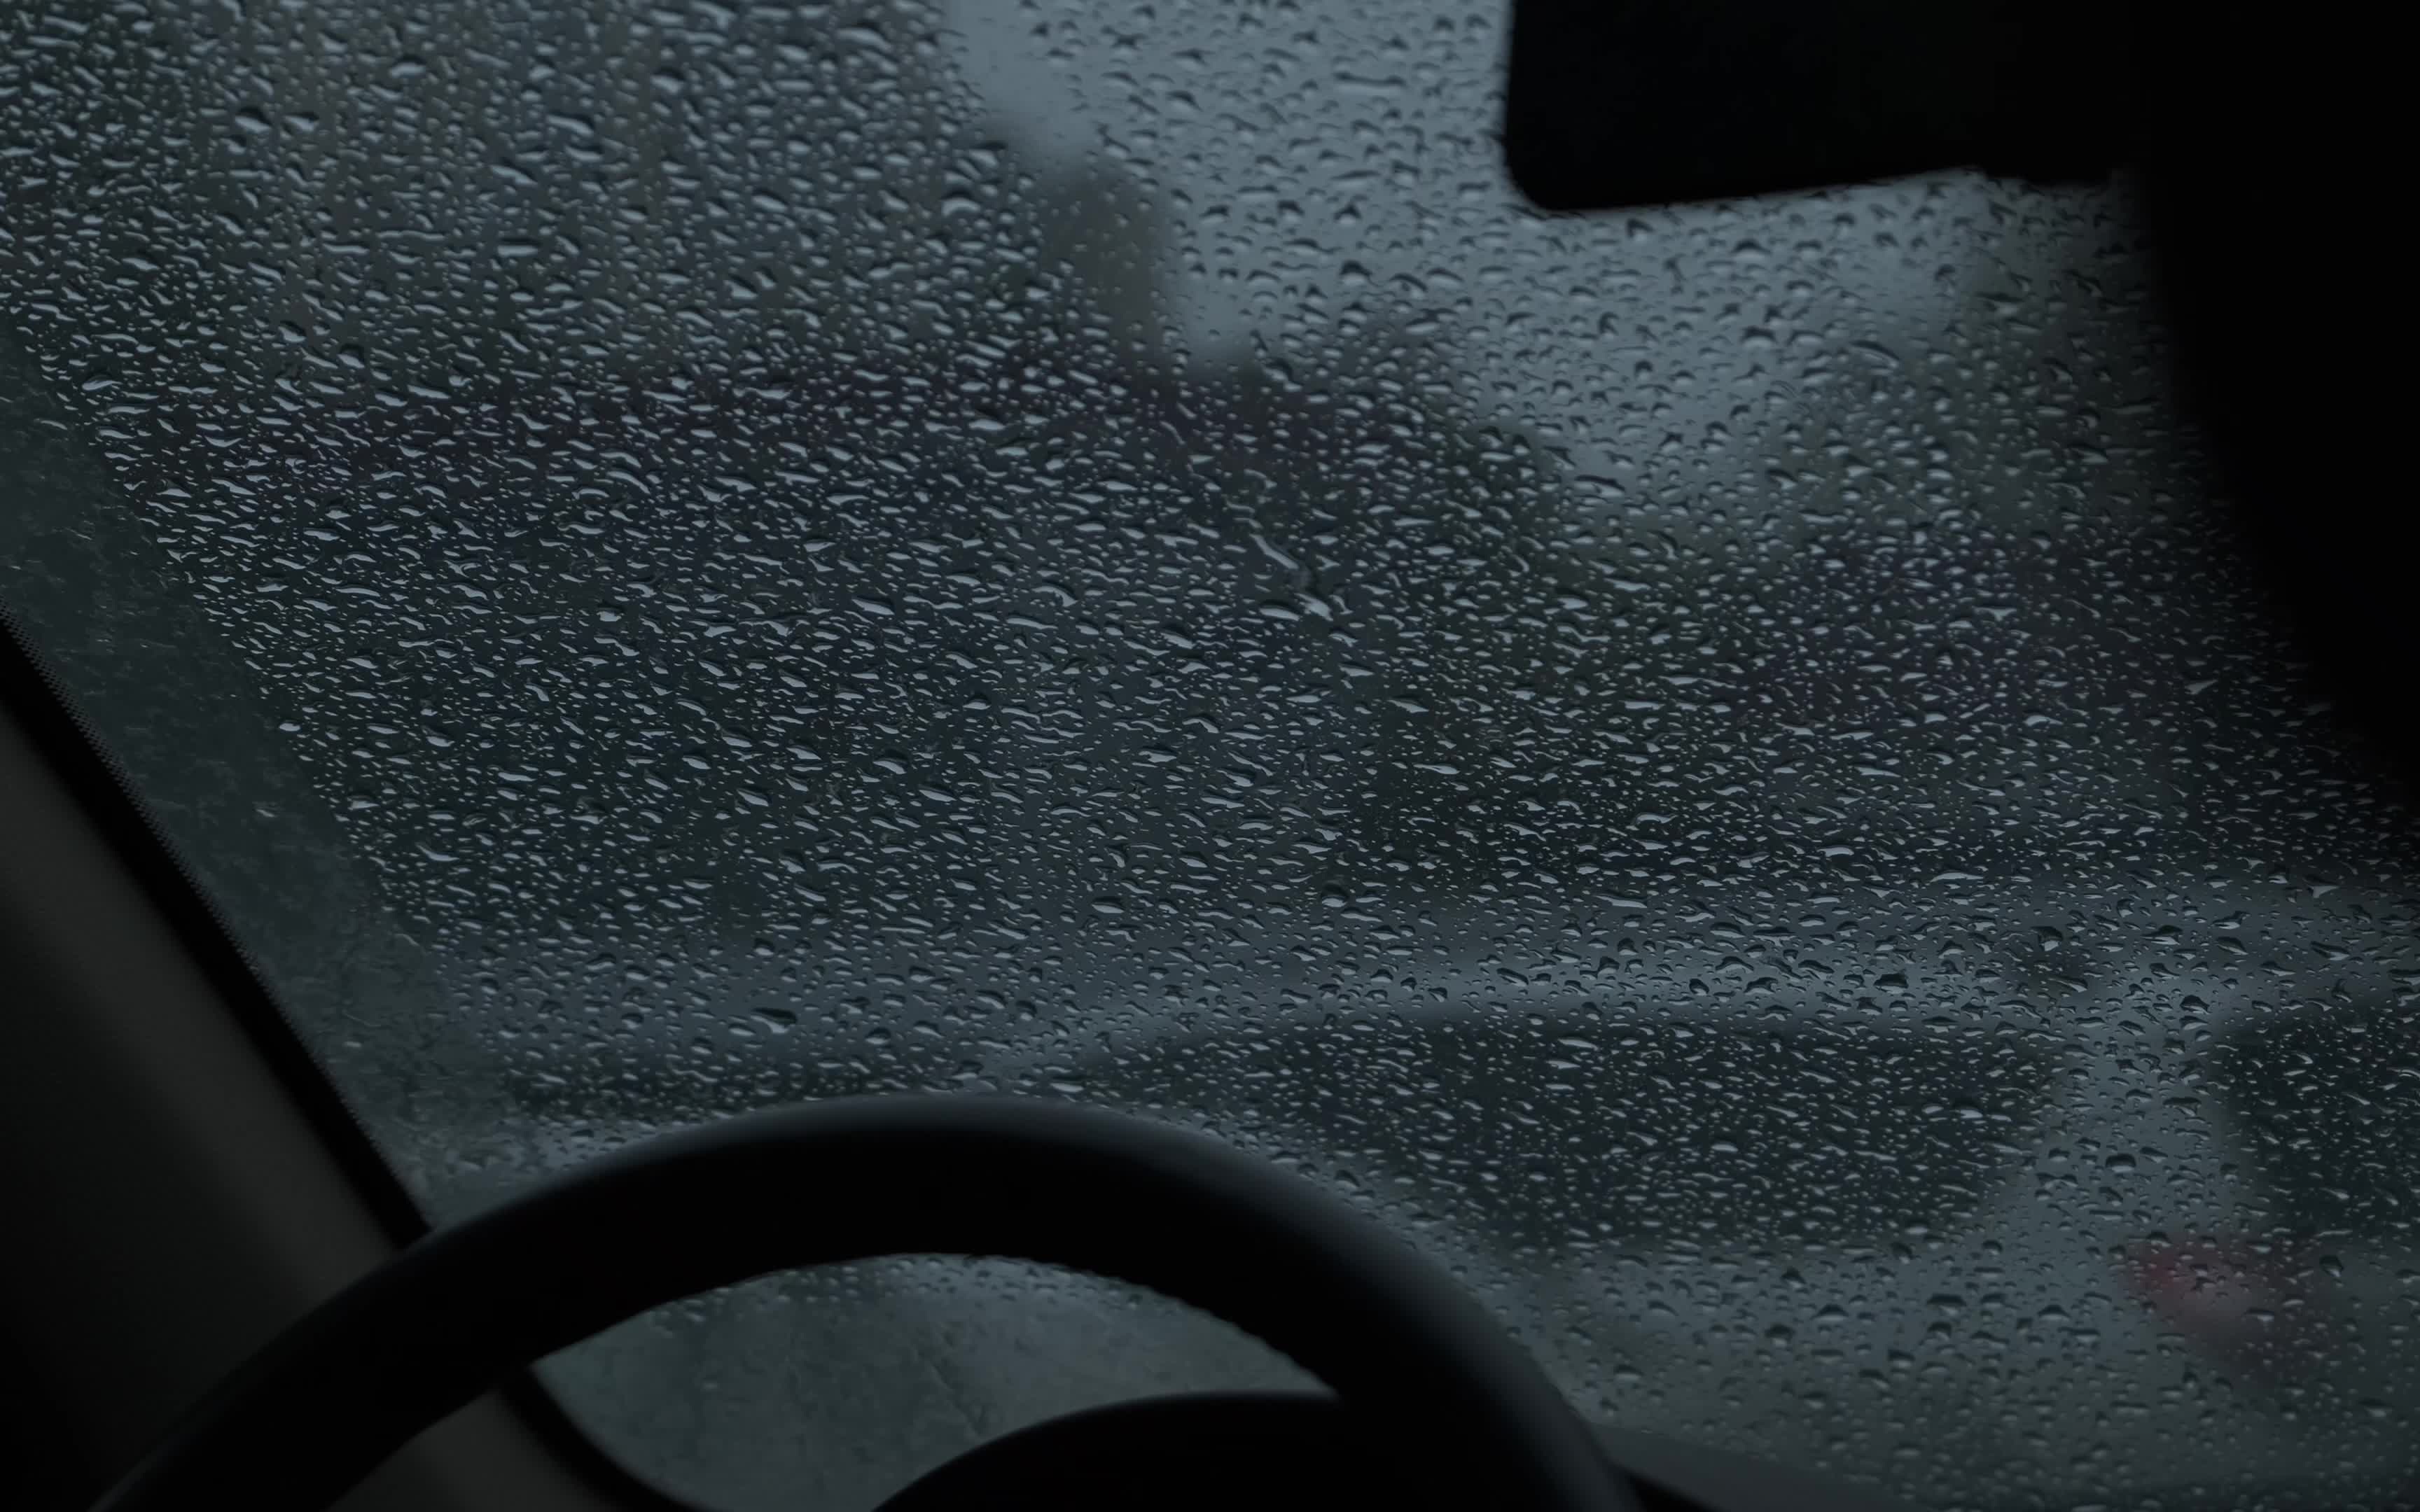 冬季工作日下雨天躲在车里取暖有感(记录工具:富士xt4 xf50mm